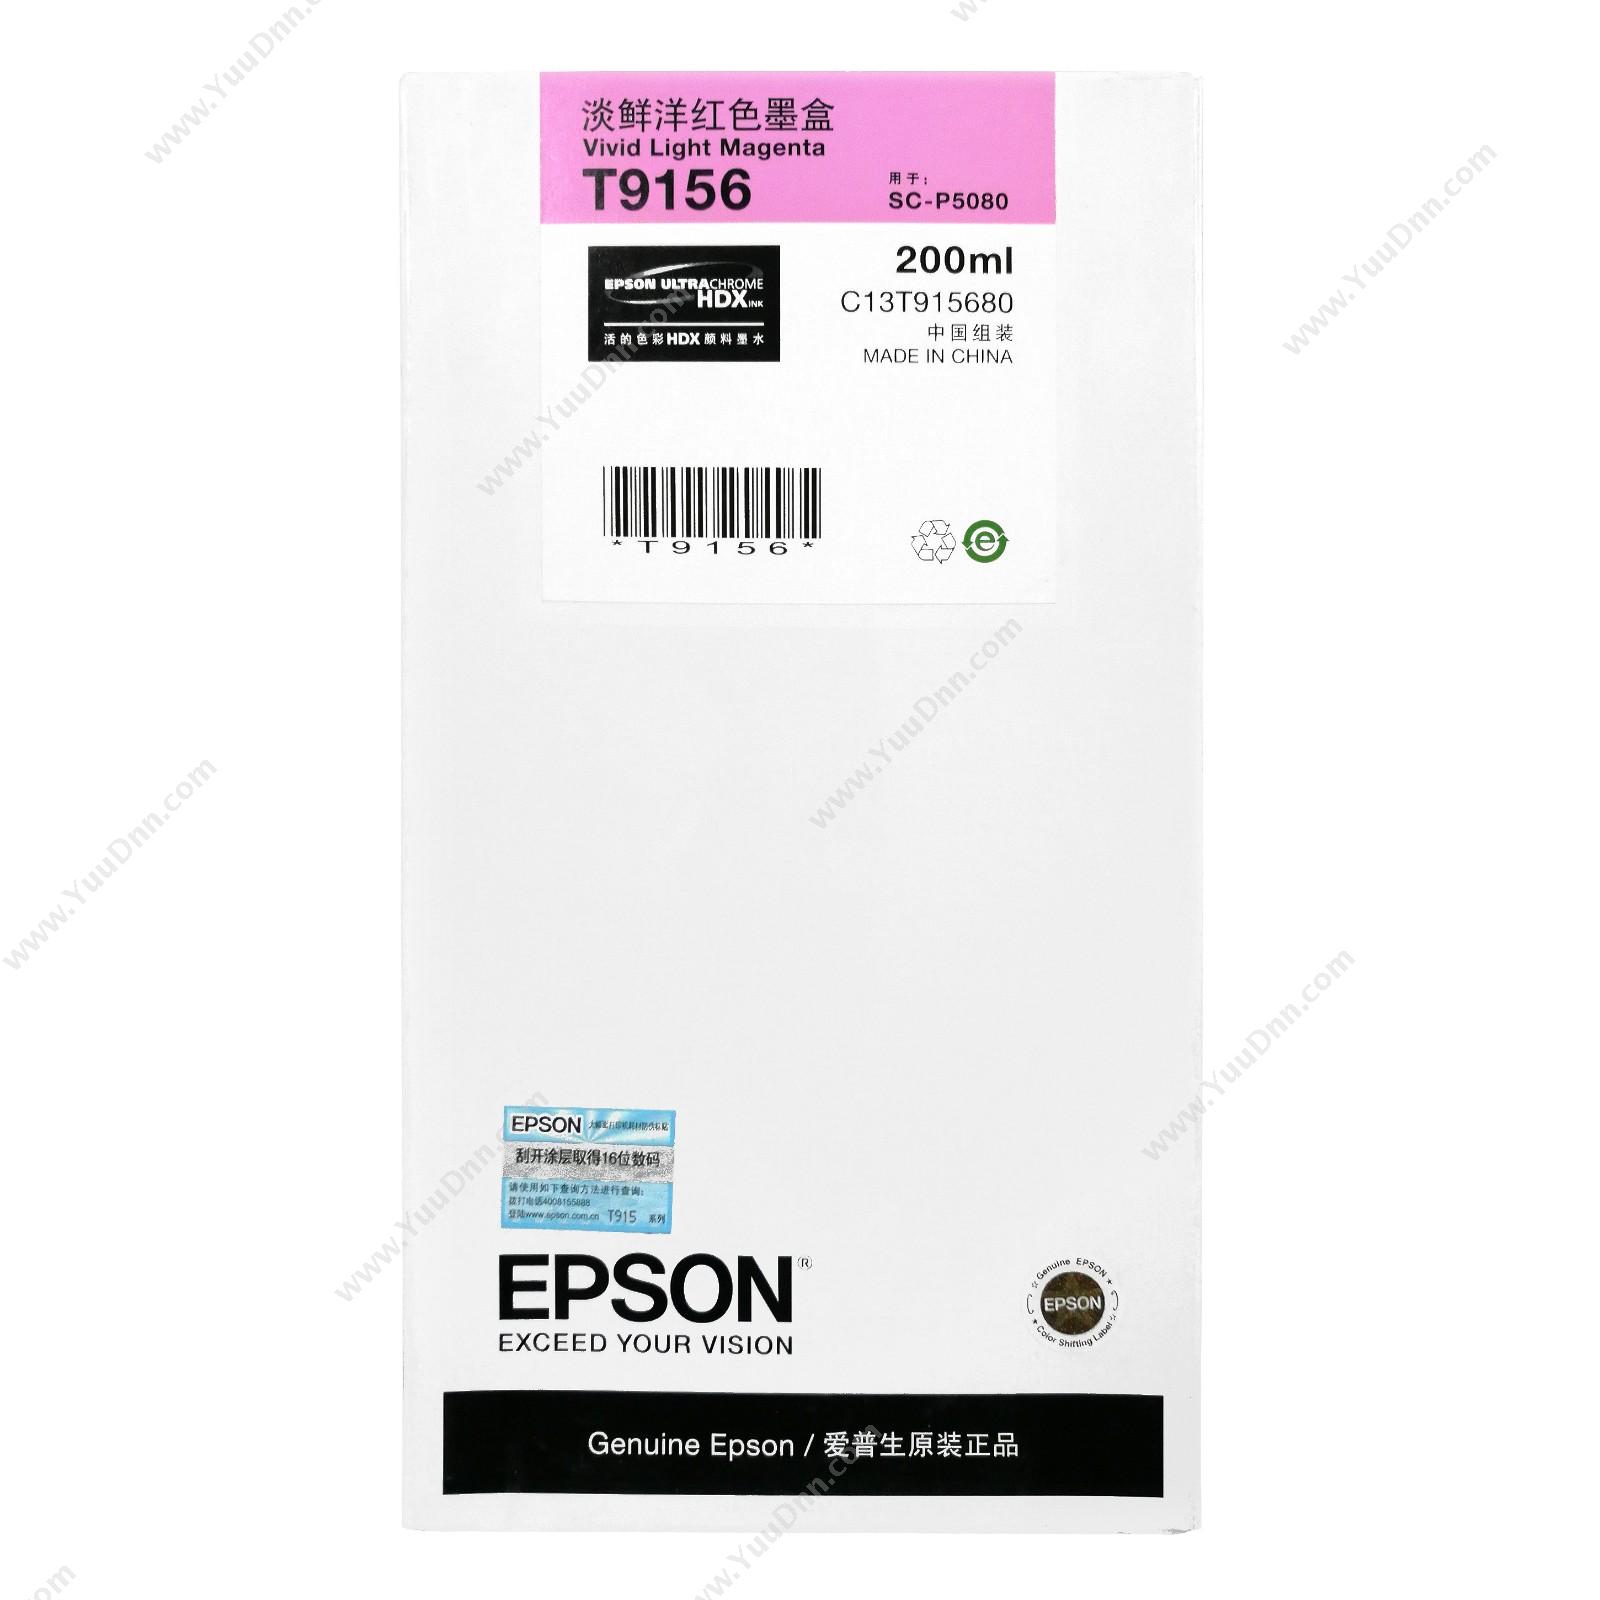 爱普生 Epson P5080淡洋红200ml(C13T915680) 墨粉/墨粉盒